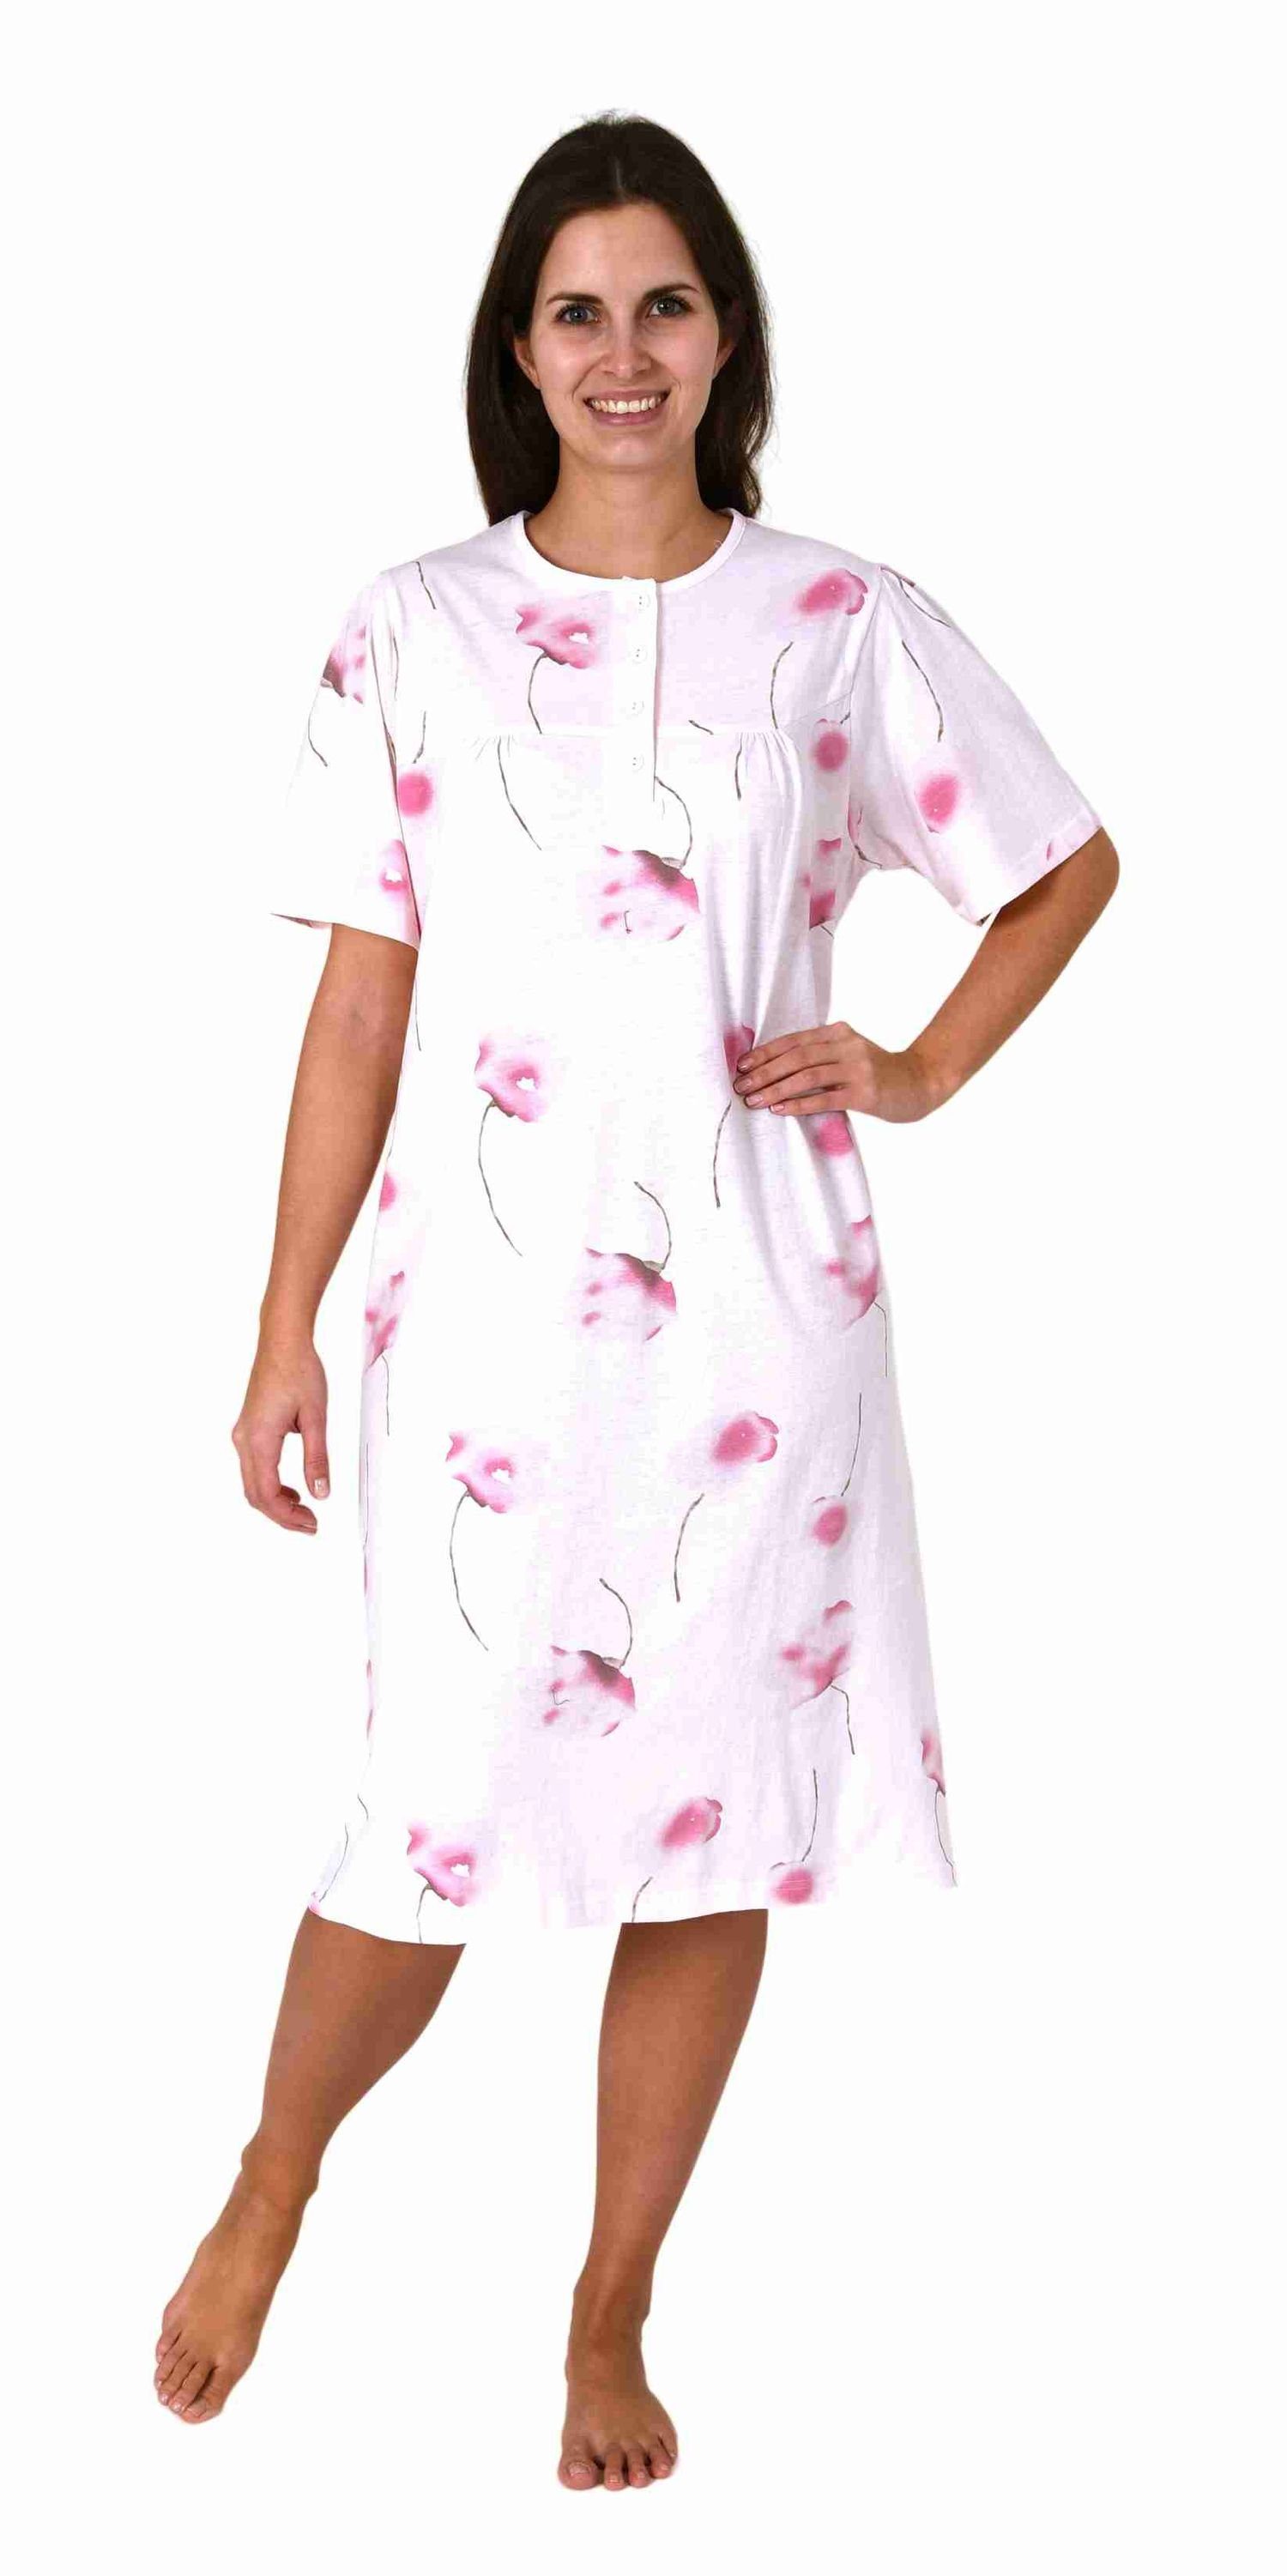 Normann Nachthemd Elegantes frauliches Damen kurzarm Nachthemd mit Knopfleiste am Hals rose